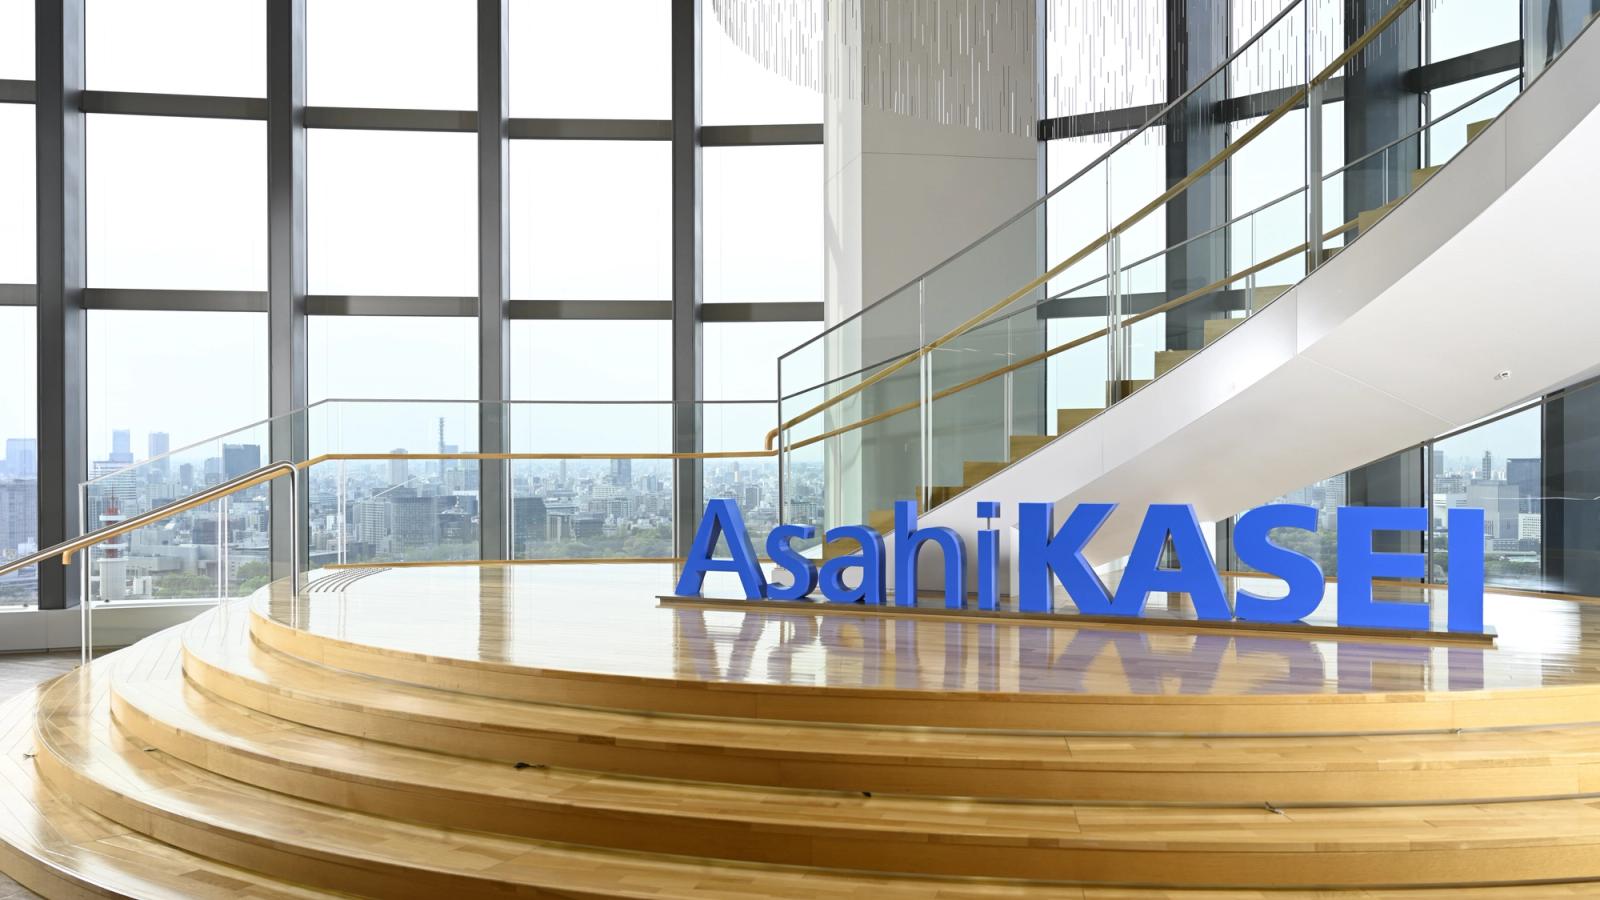 Asahi Kasei Corporation: Aufbau einer Lernplattform zur Unterstützung der eigen-verantwortlichen Weiterbildung und Karriereentwicklung der Mitarbeitenden 